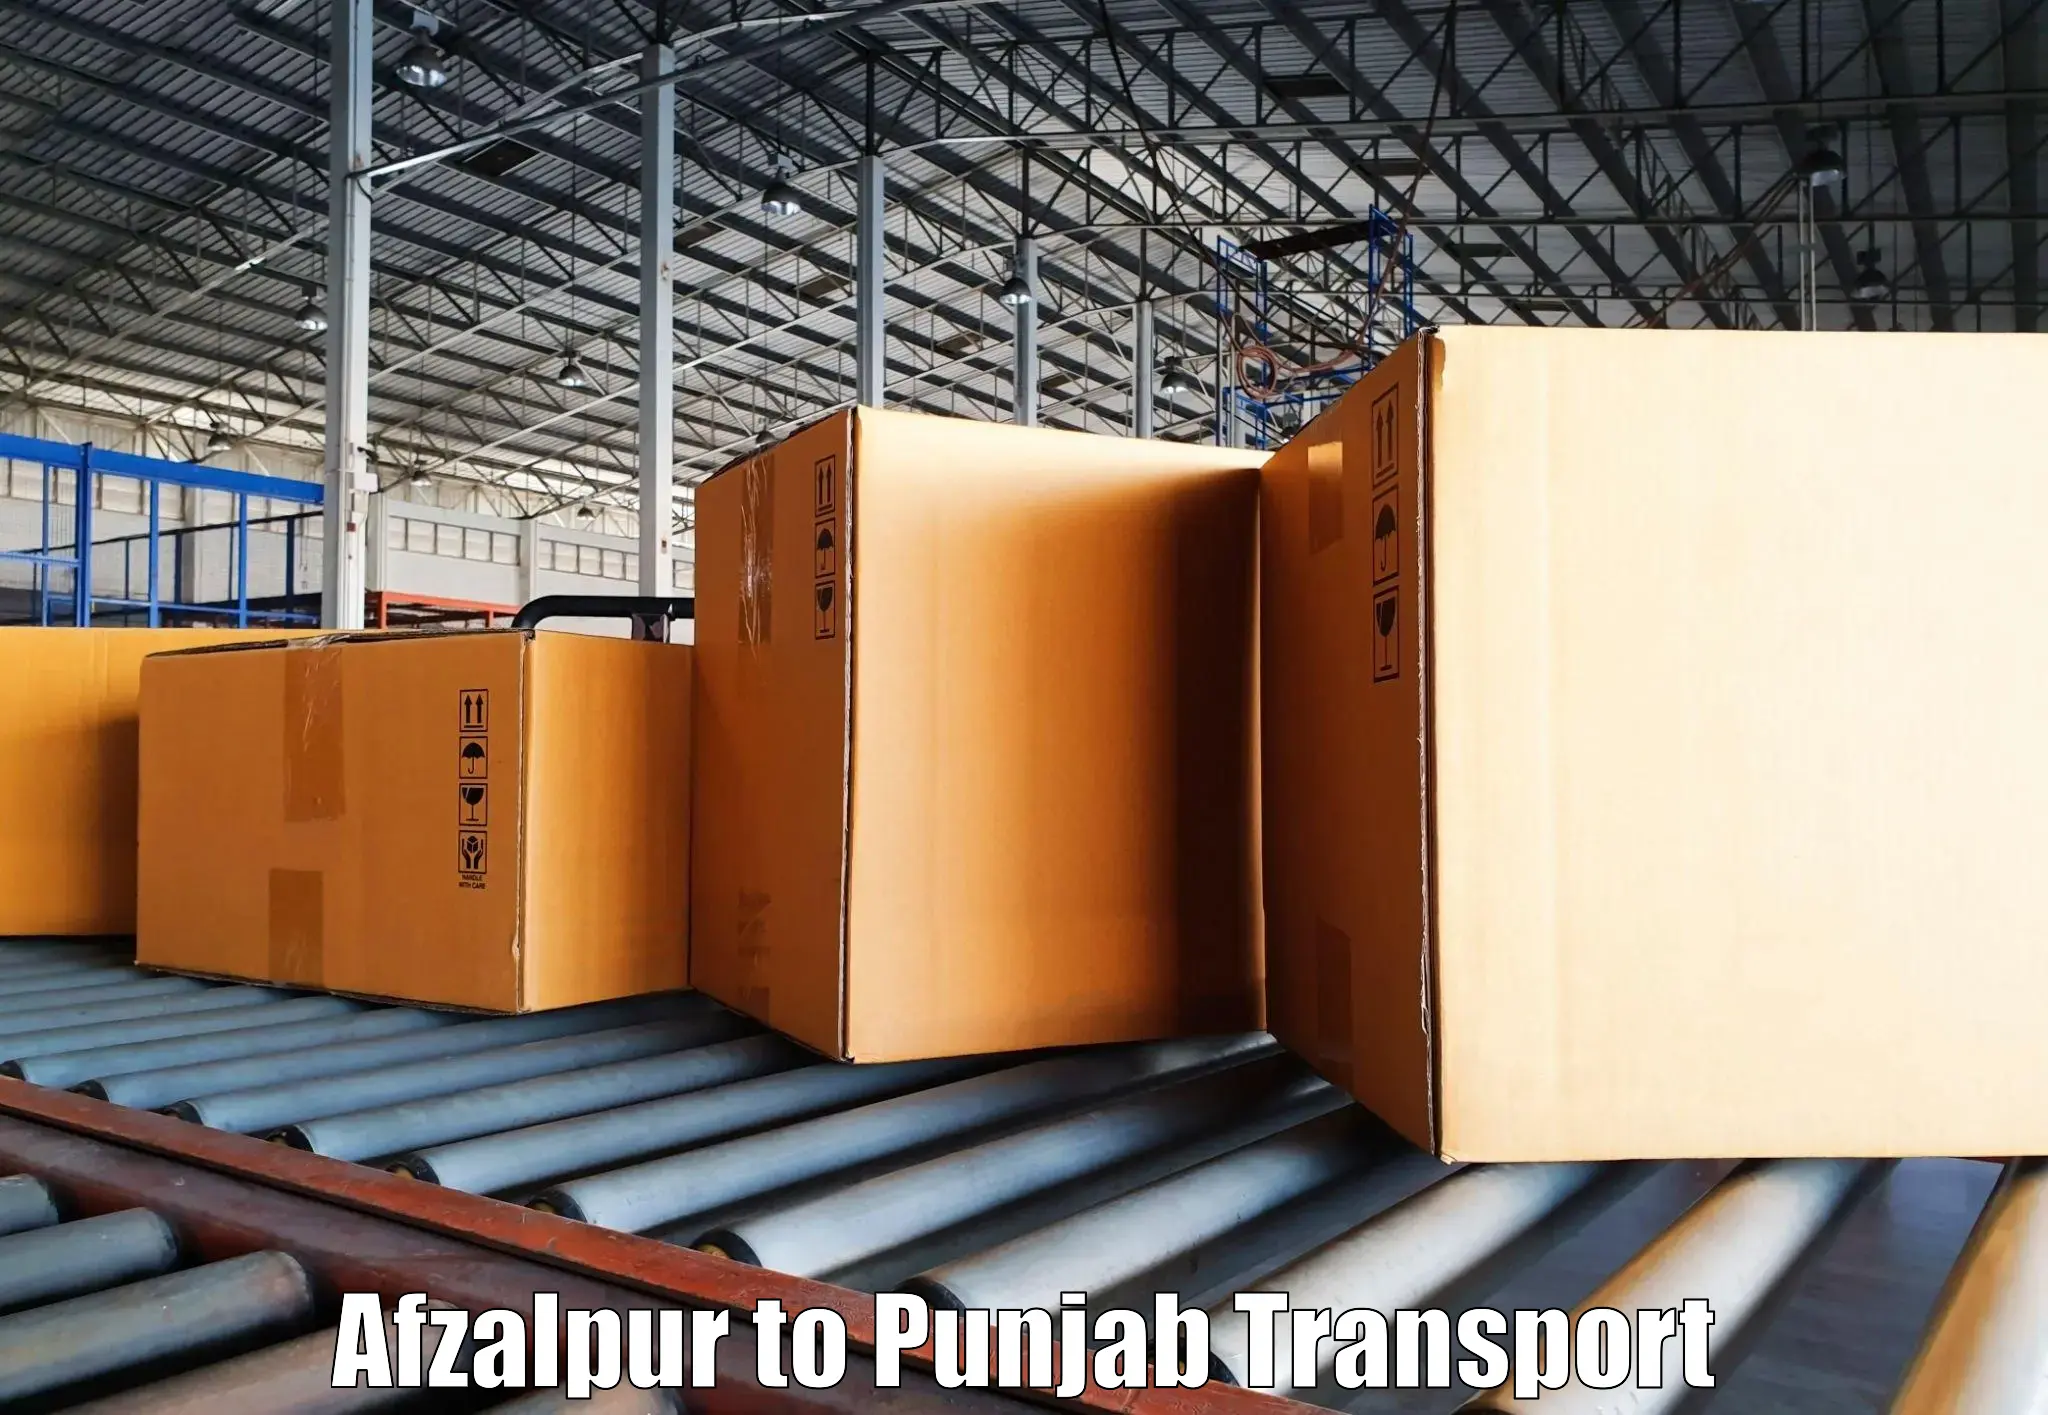 Shipping partner Afzalpur to Amritsar